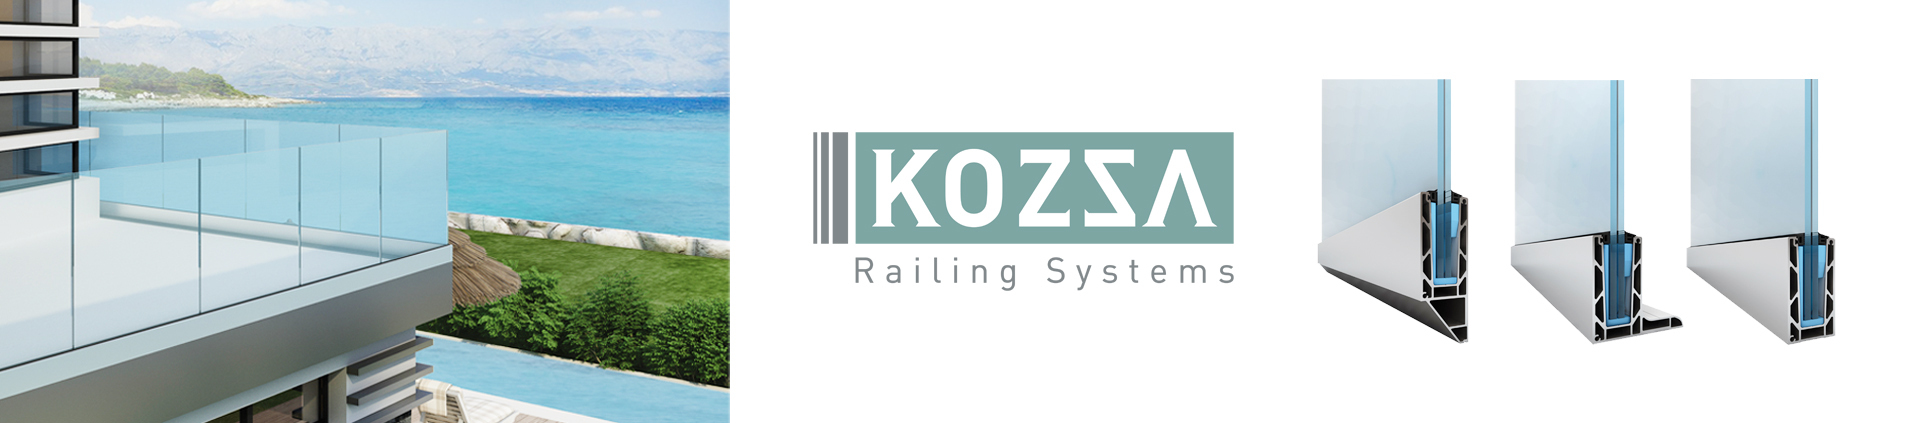 Kozza Railin System